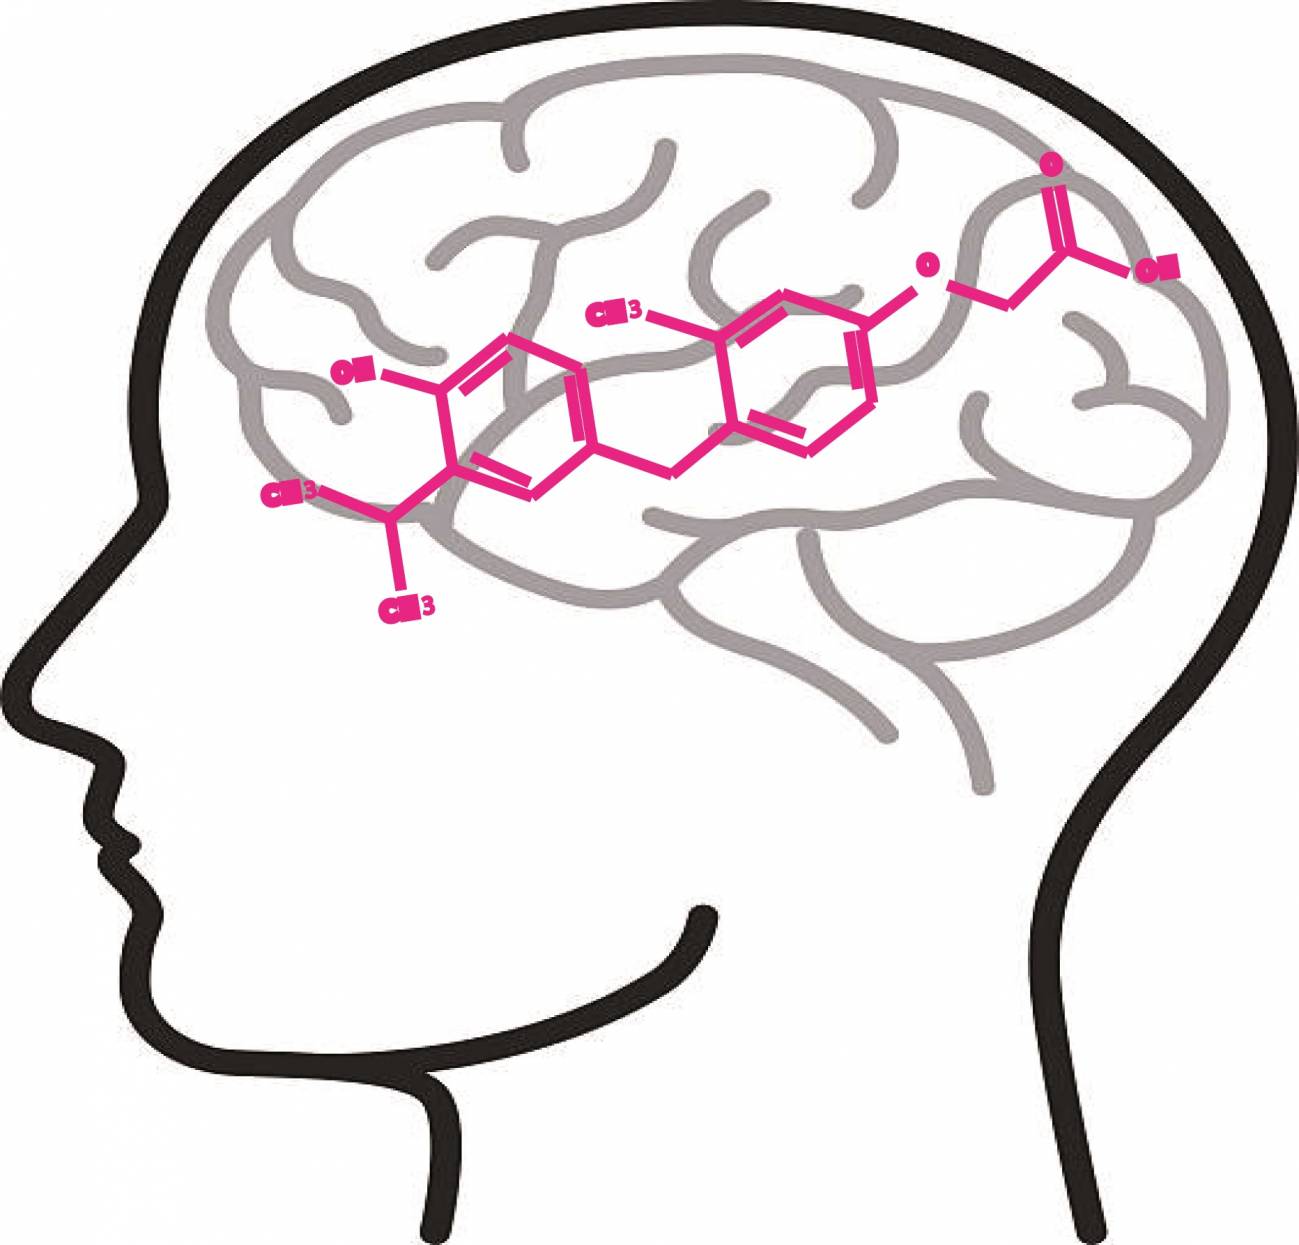 Dibujo diagrama de una cabeza humana, donde se ve el cerebro y el modelo de una molécula